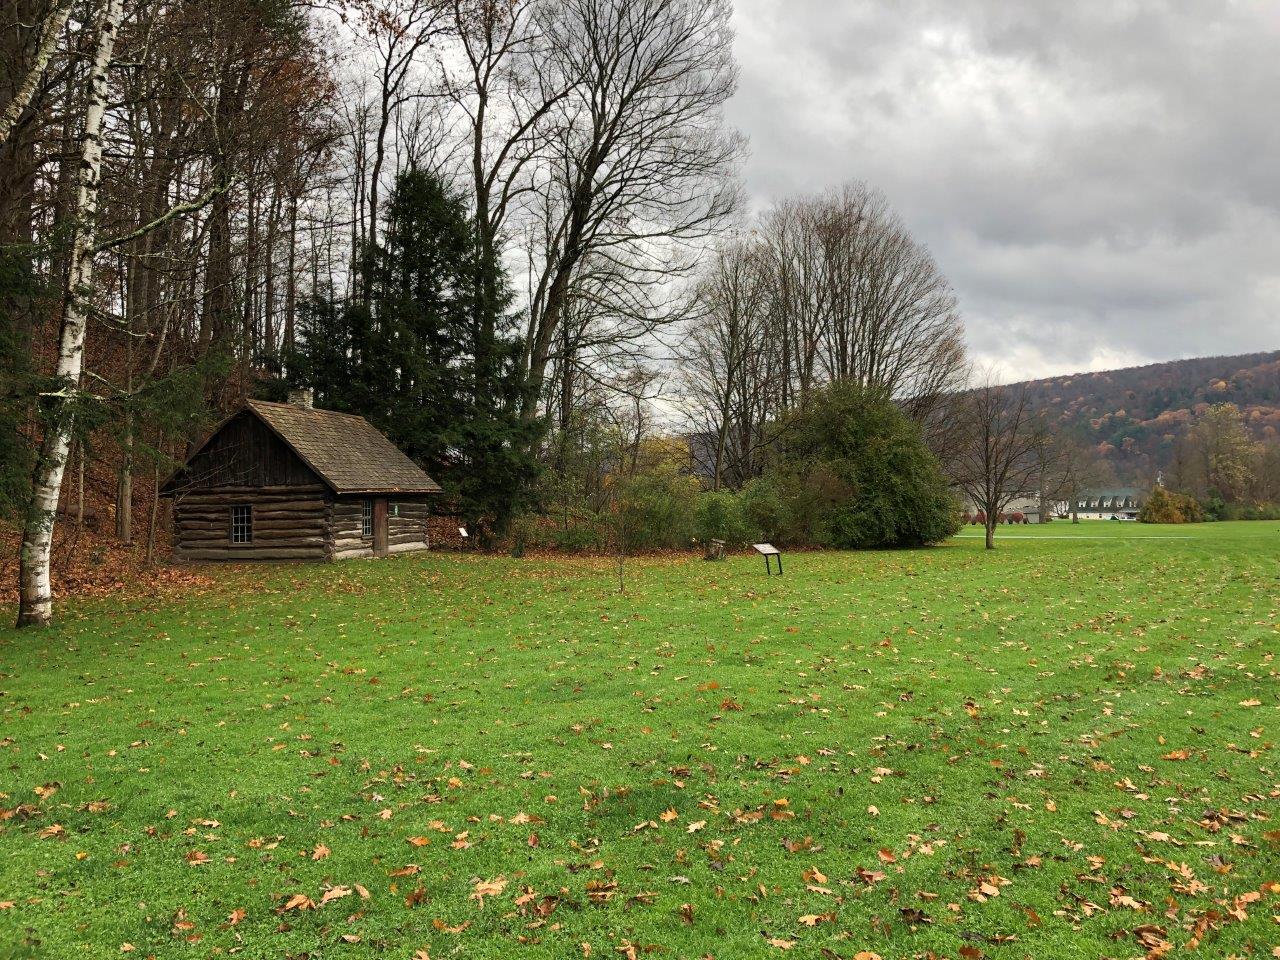 Millard Fillmore birthplace replica cabin